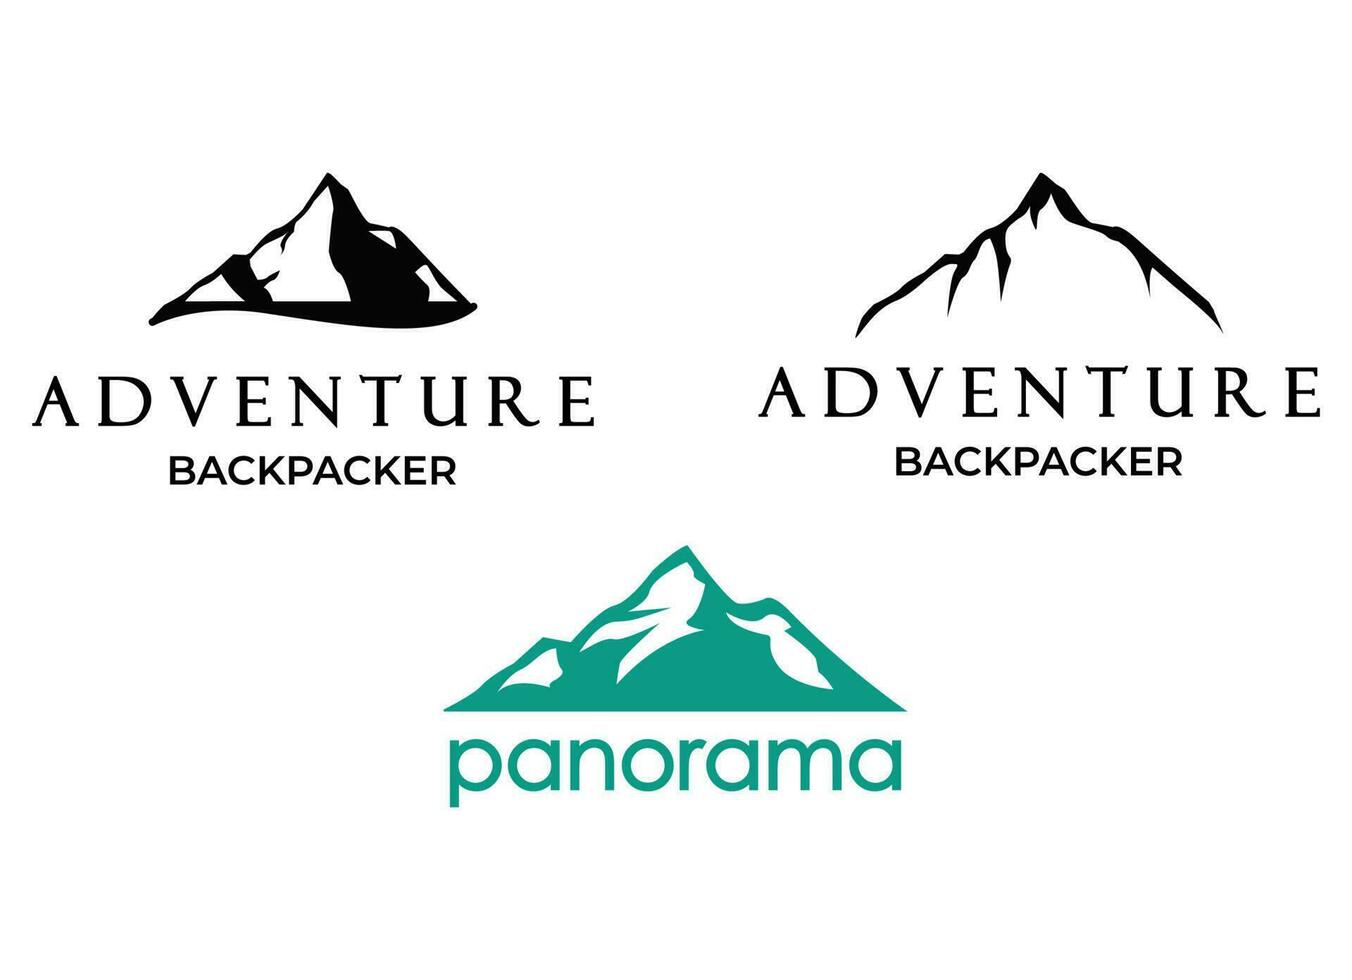 le sommet, la montagne, le logo de pointe sont inspirés des conceptions de l'ensemble. vecteur